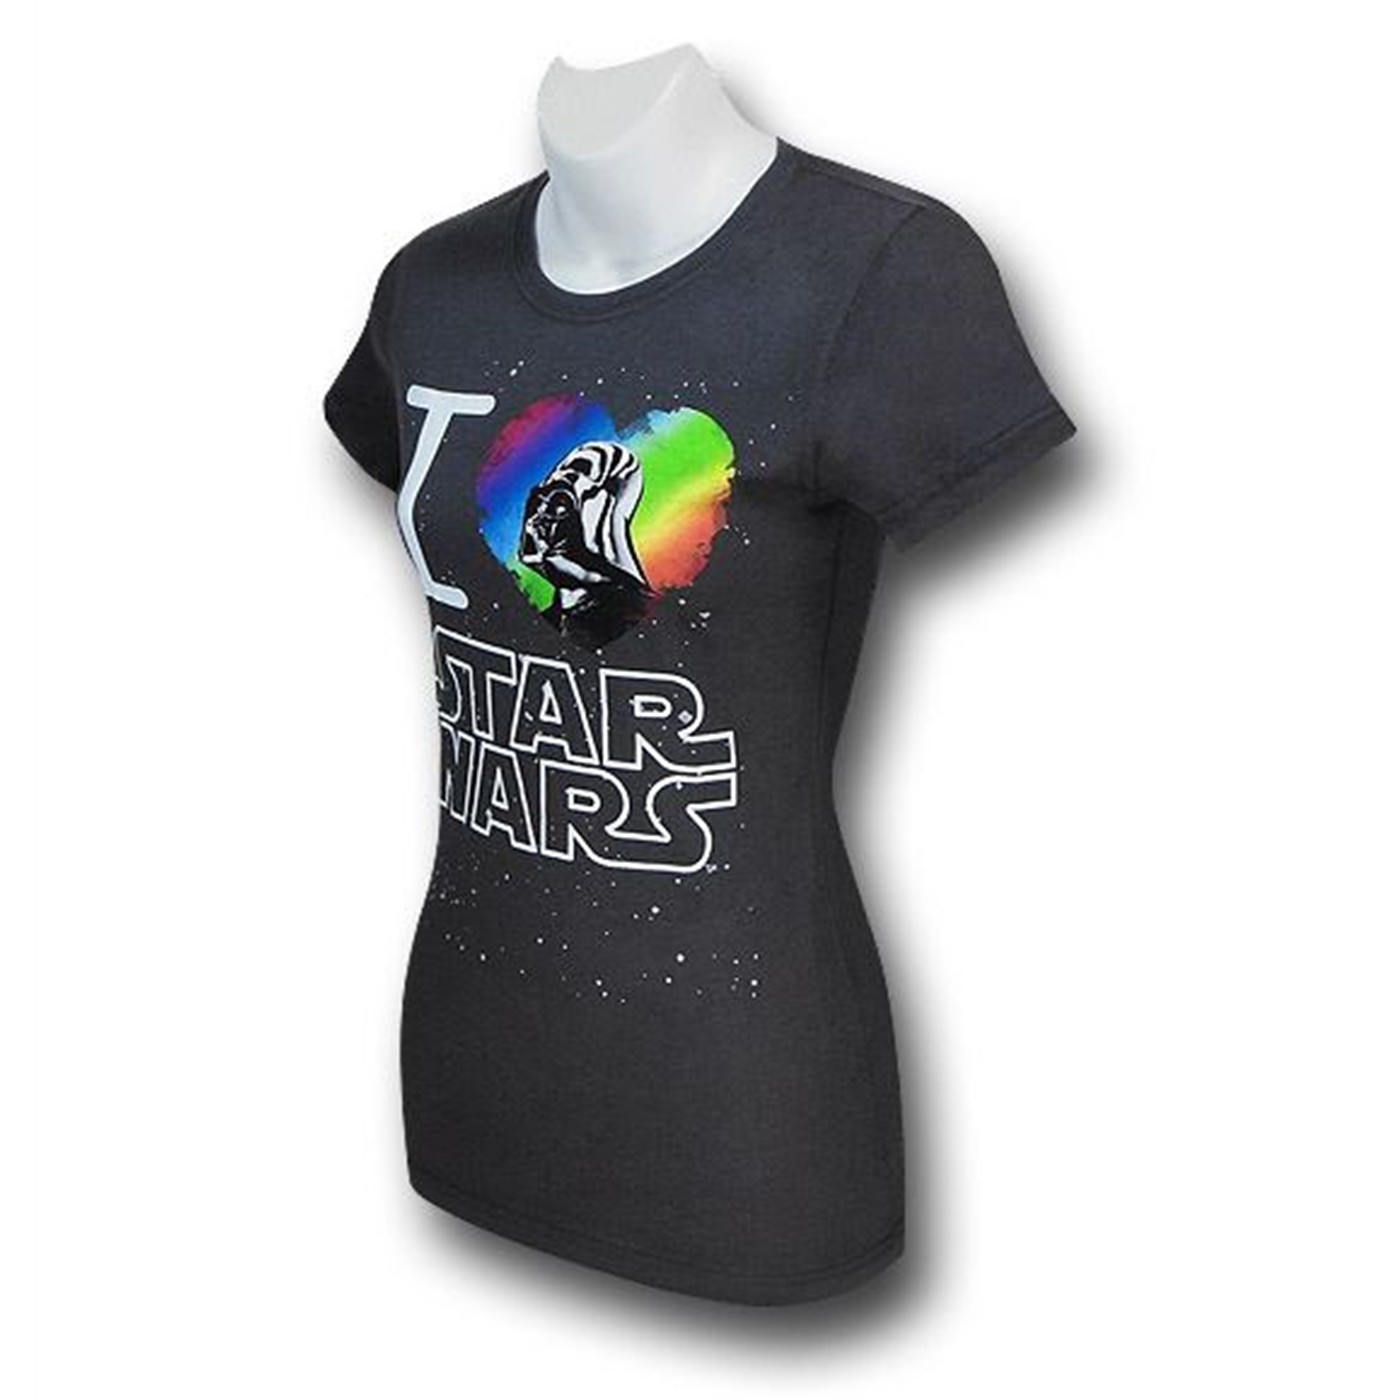 Star Wars I Heart Vader Women's T-Shirt